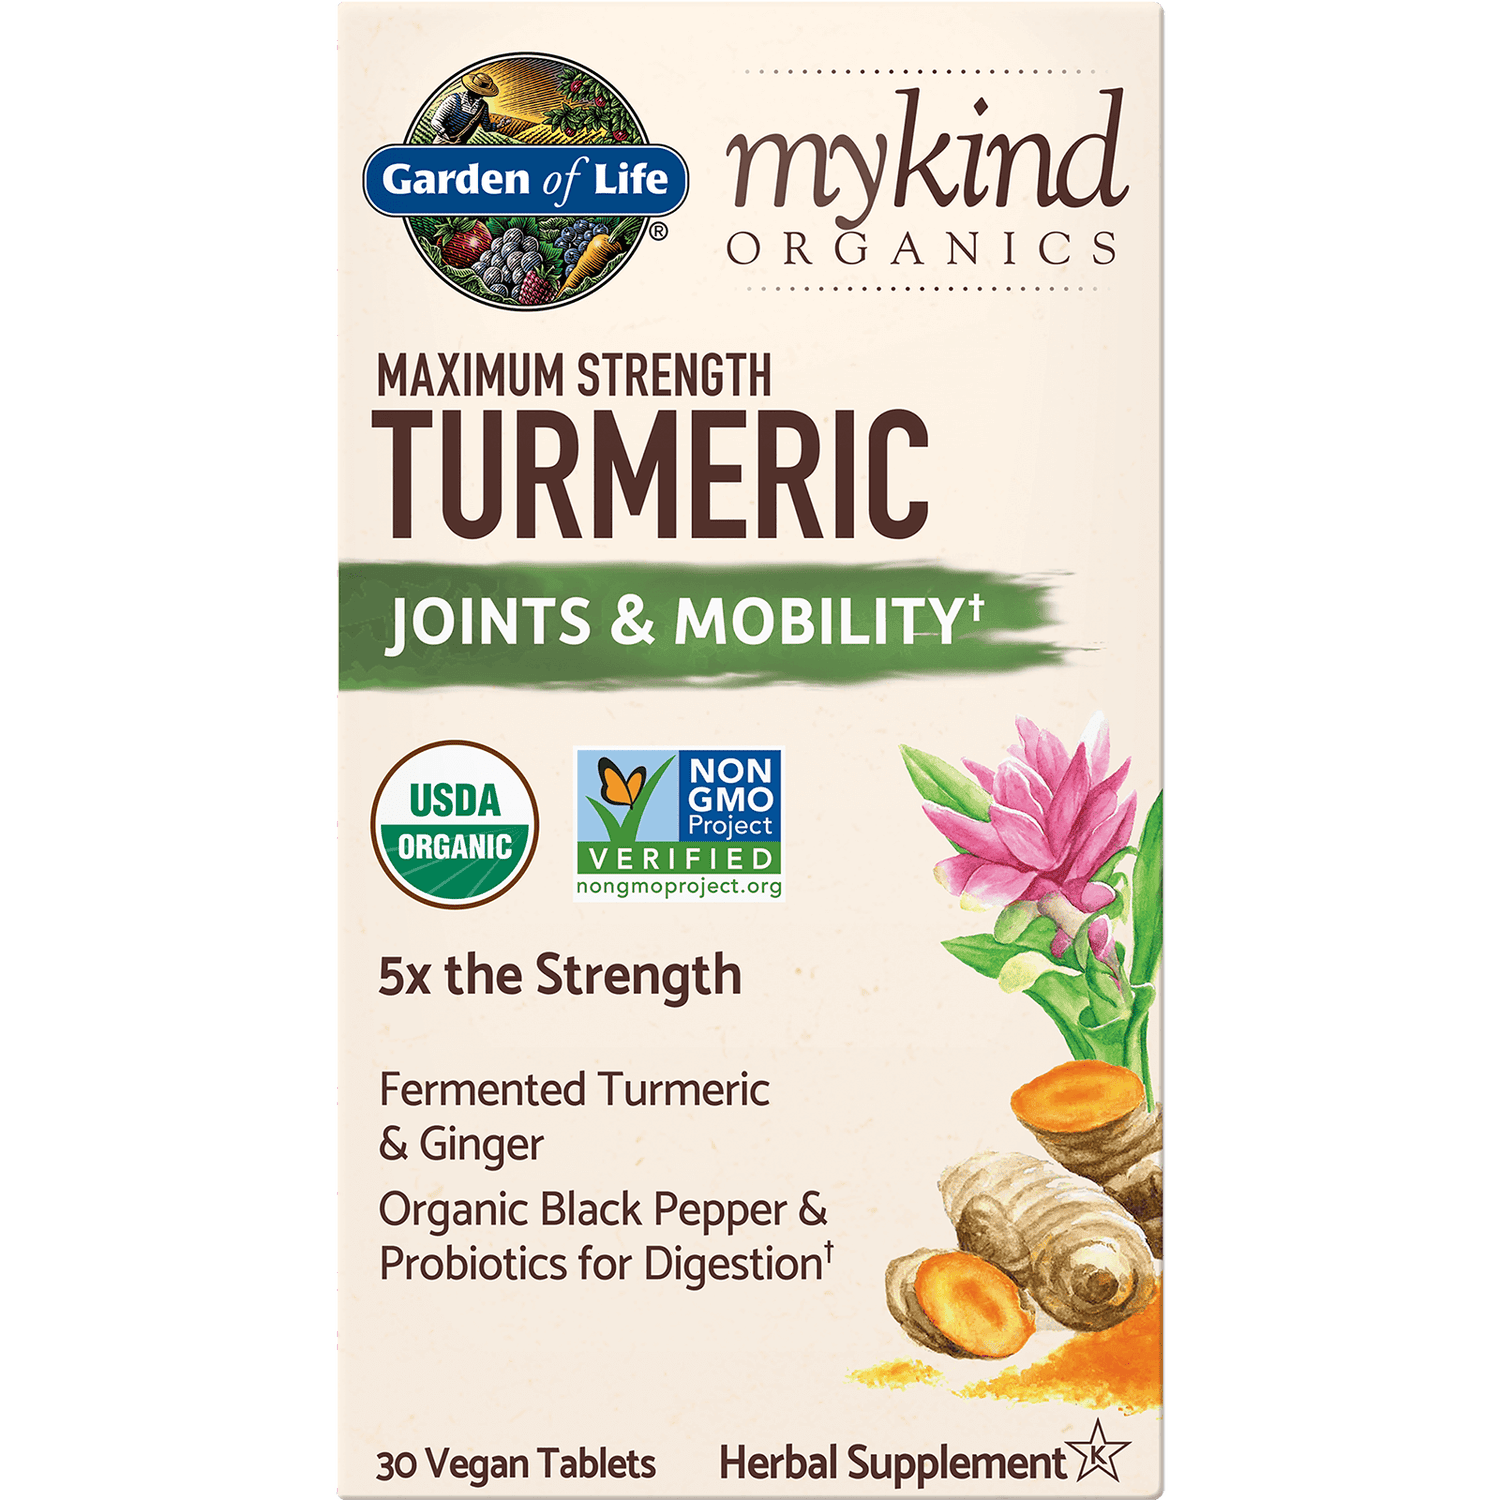 mykind Organics compresse vegane di curcuma di massima potenza - 30 compresse